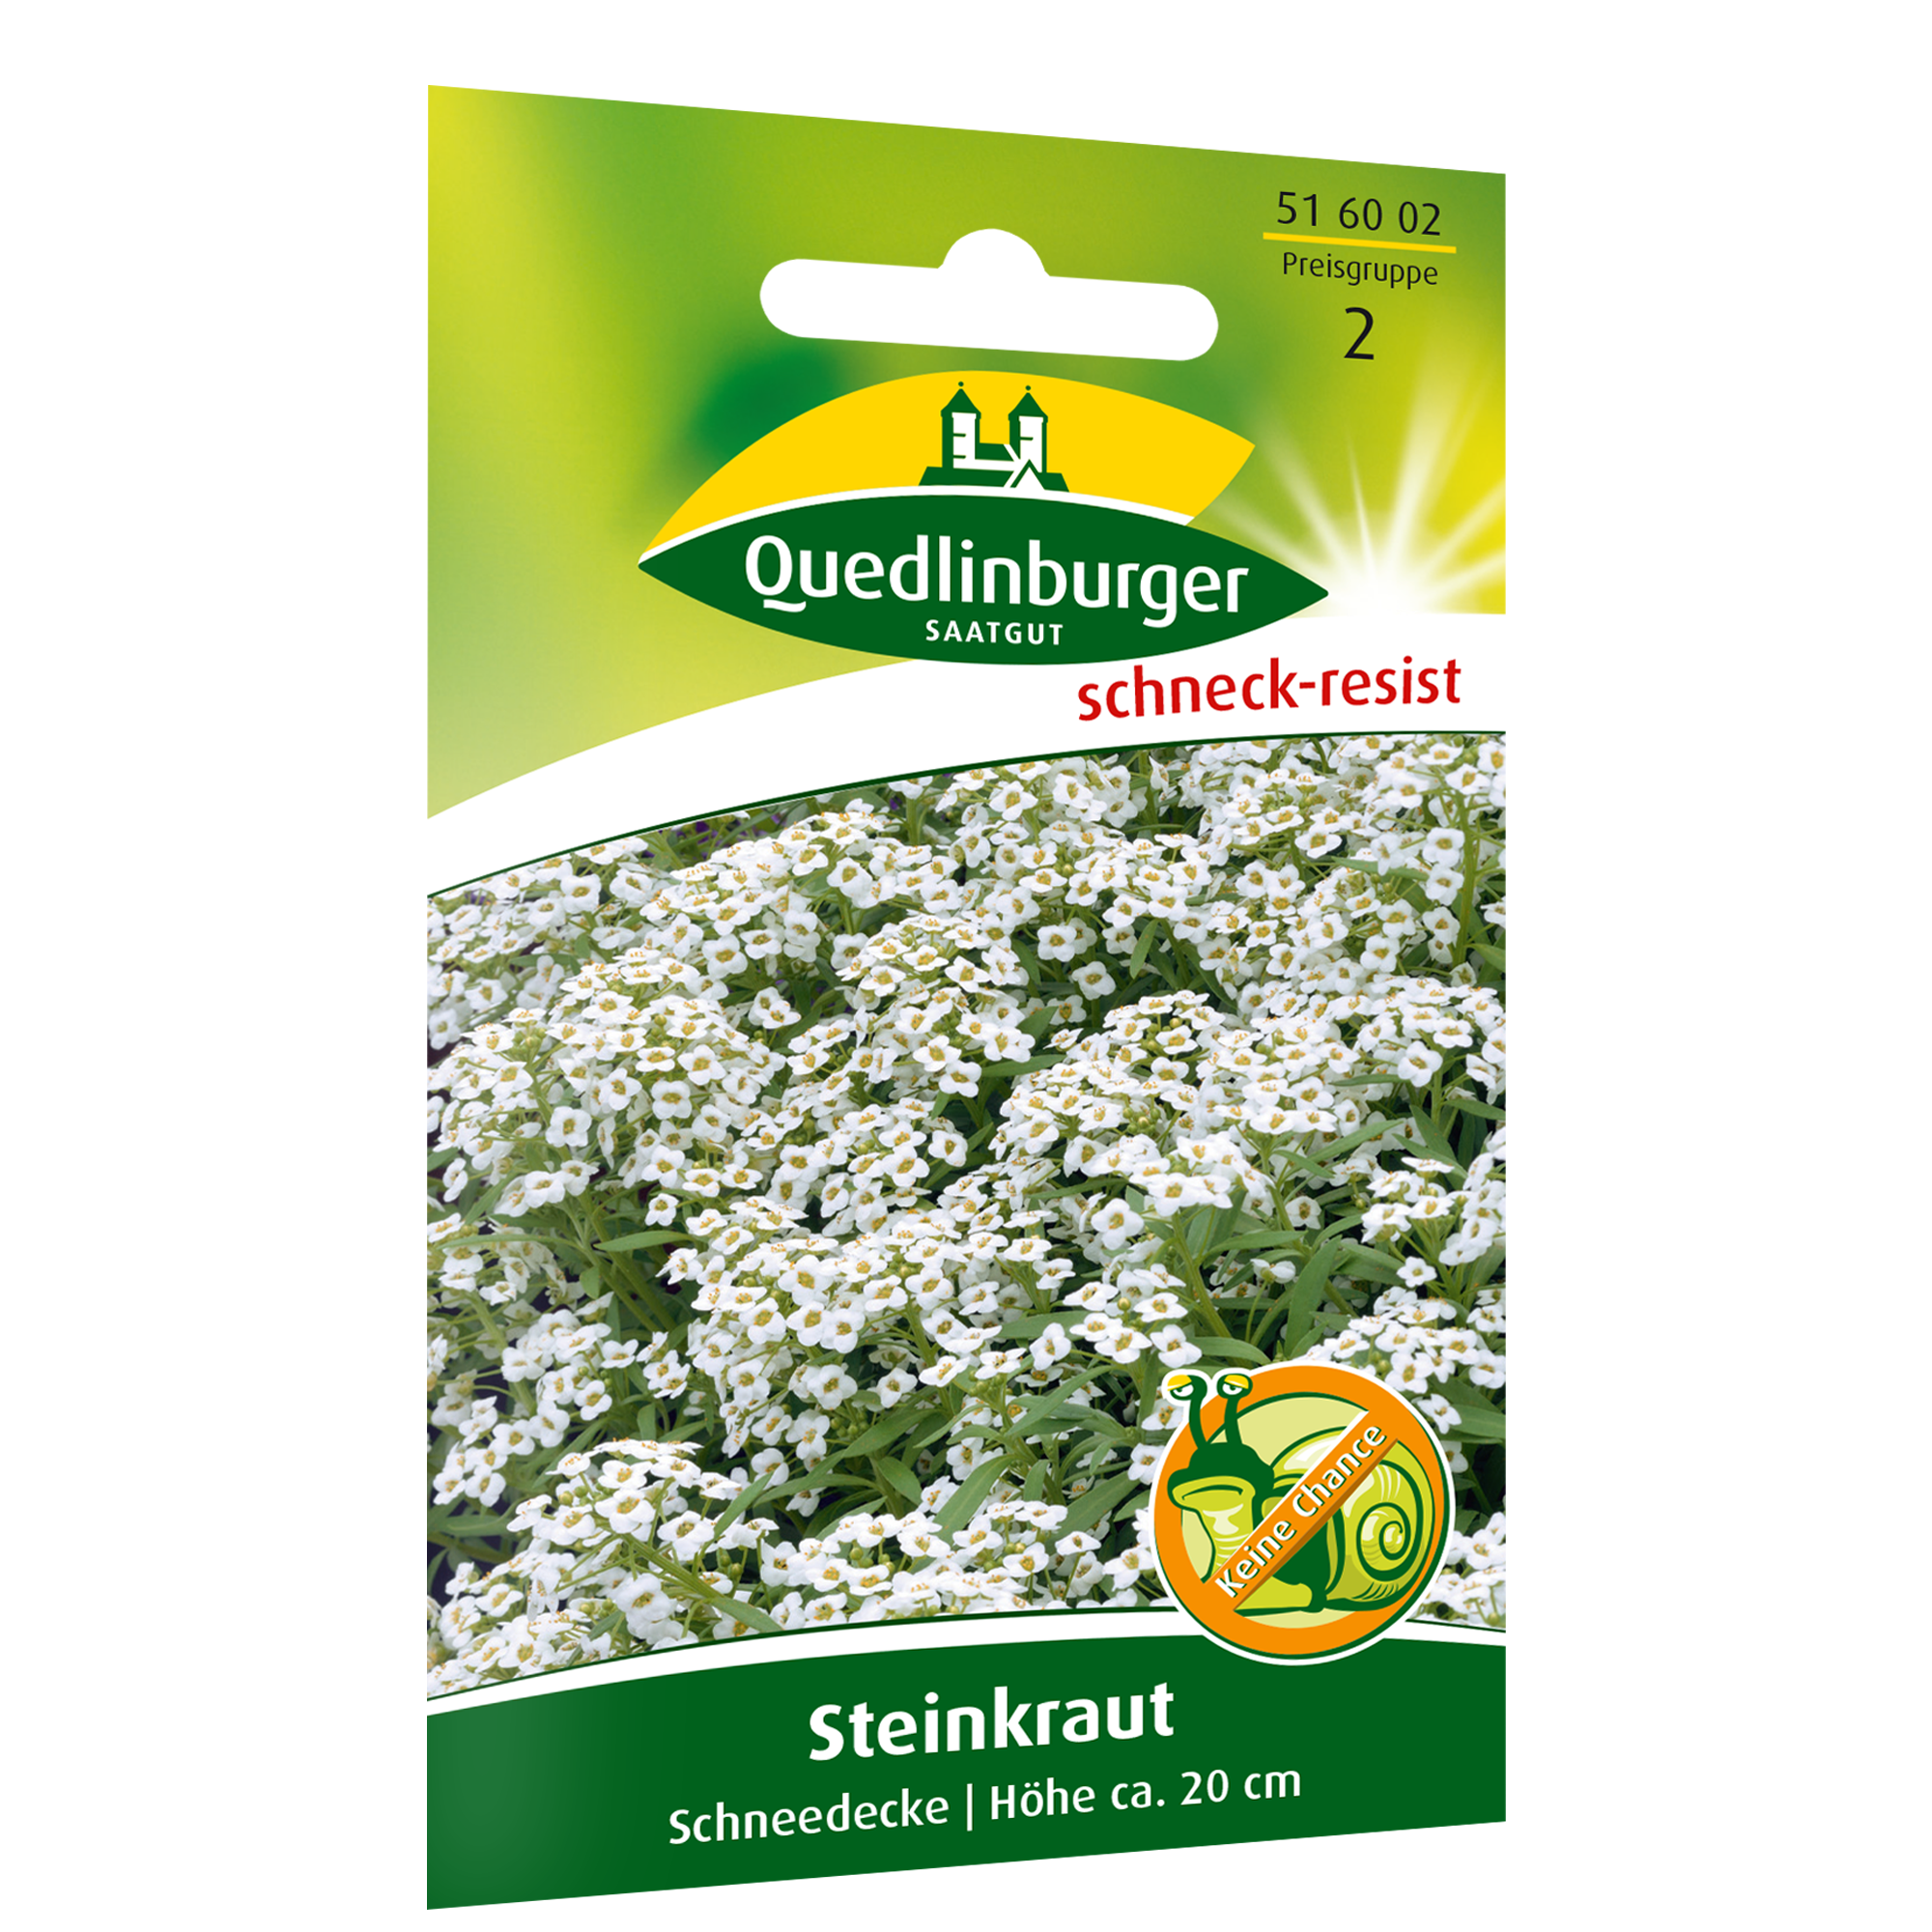 Steinkraut 'Schneedecke' + product picture